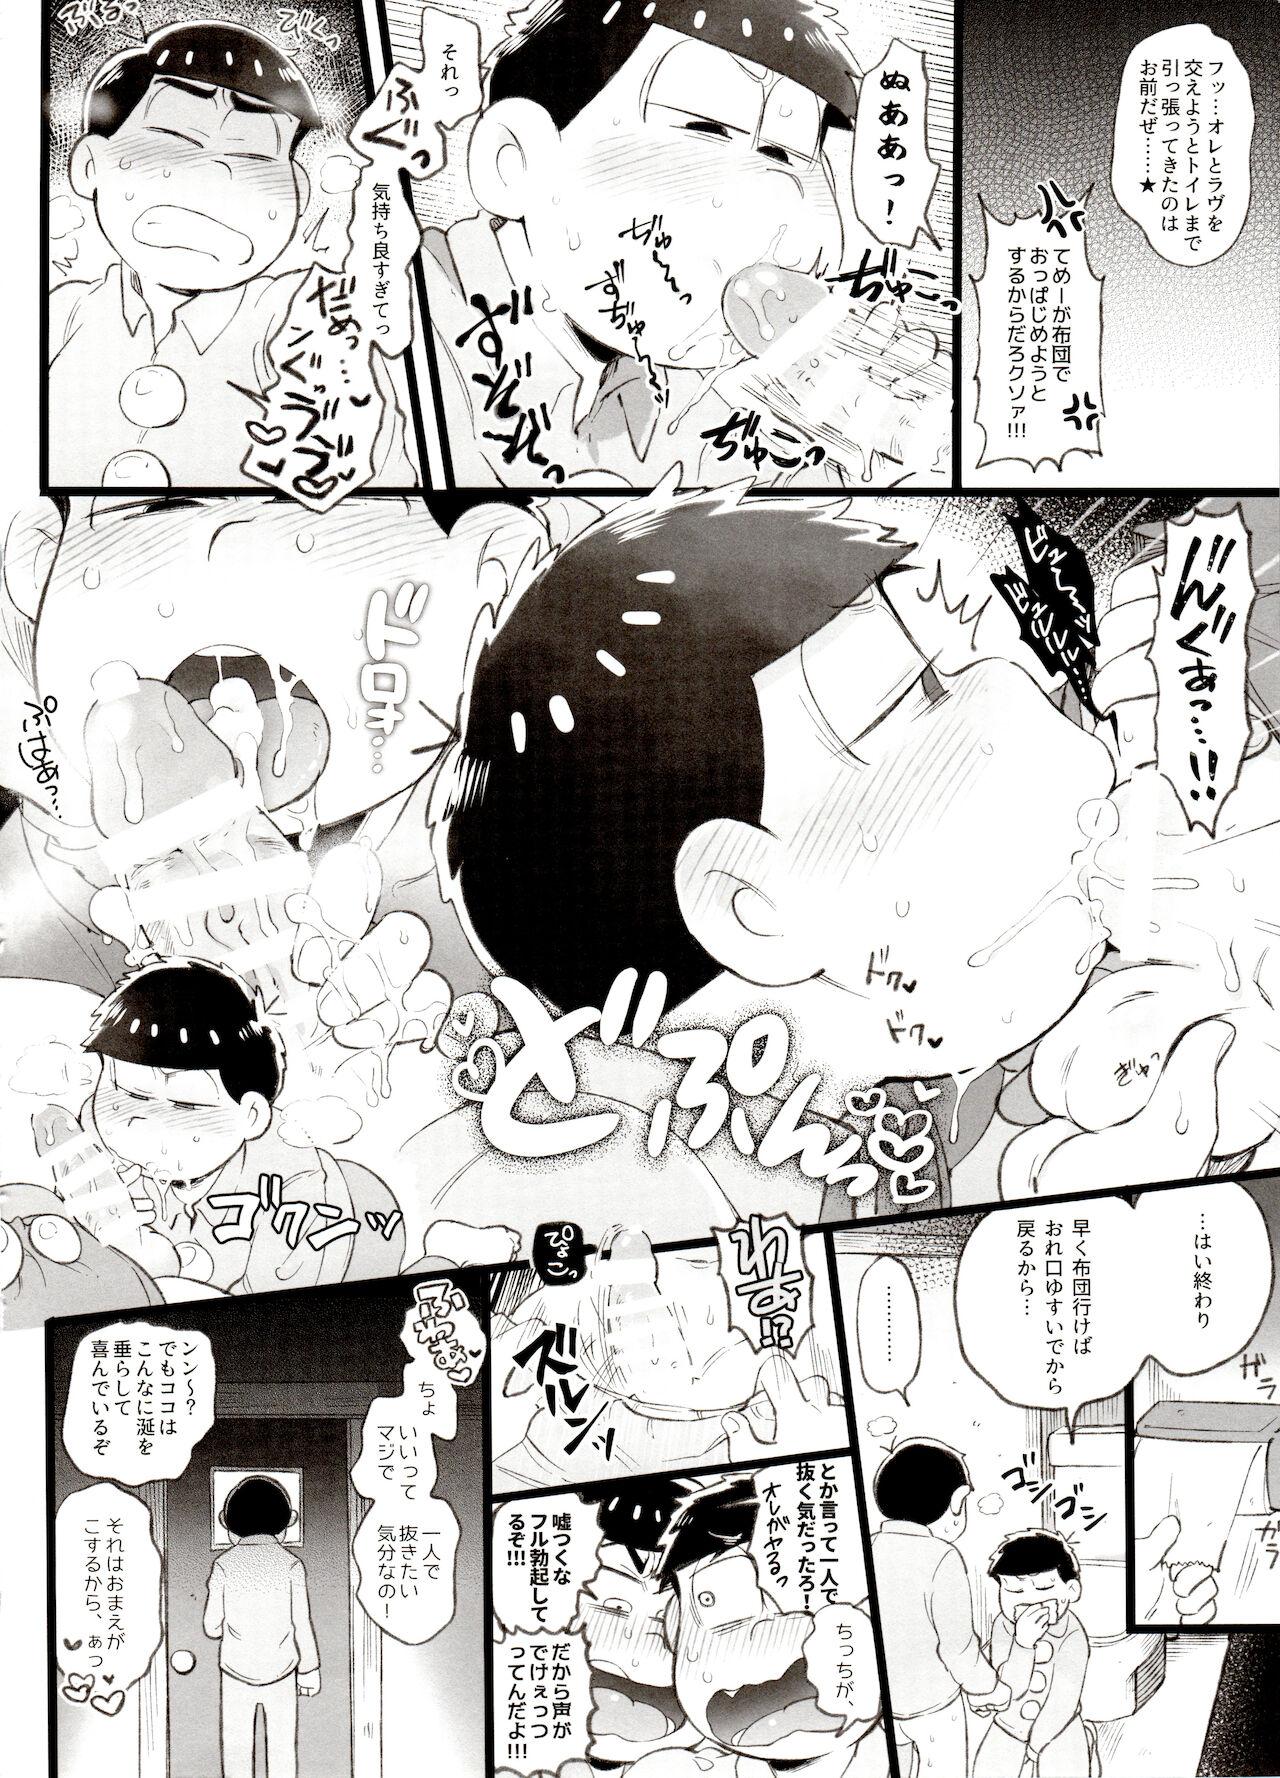 Free Blowjob Porn Kahou 10-ji Yon no Omake Hon + Andante no Koufukuron Gojitsu Manga - Osomatsu san Hardcore - Page 3